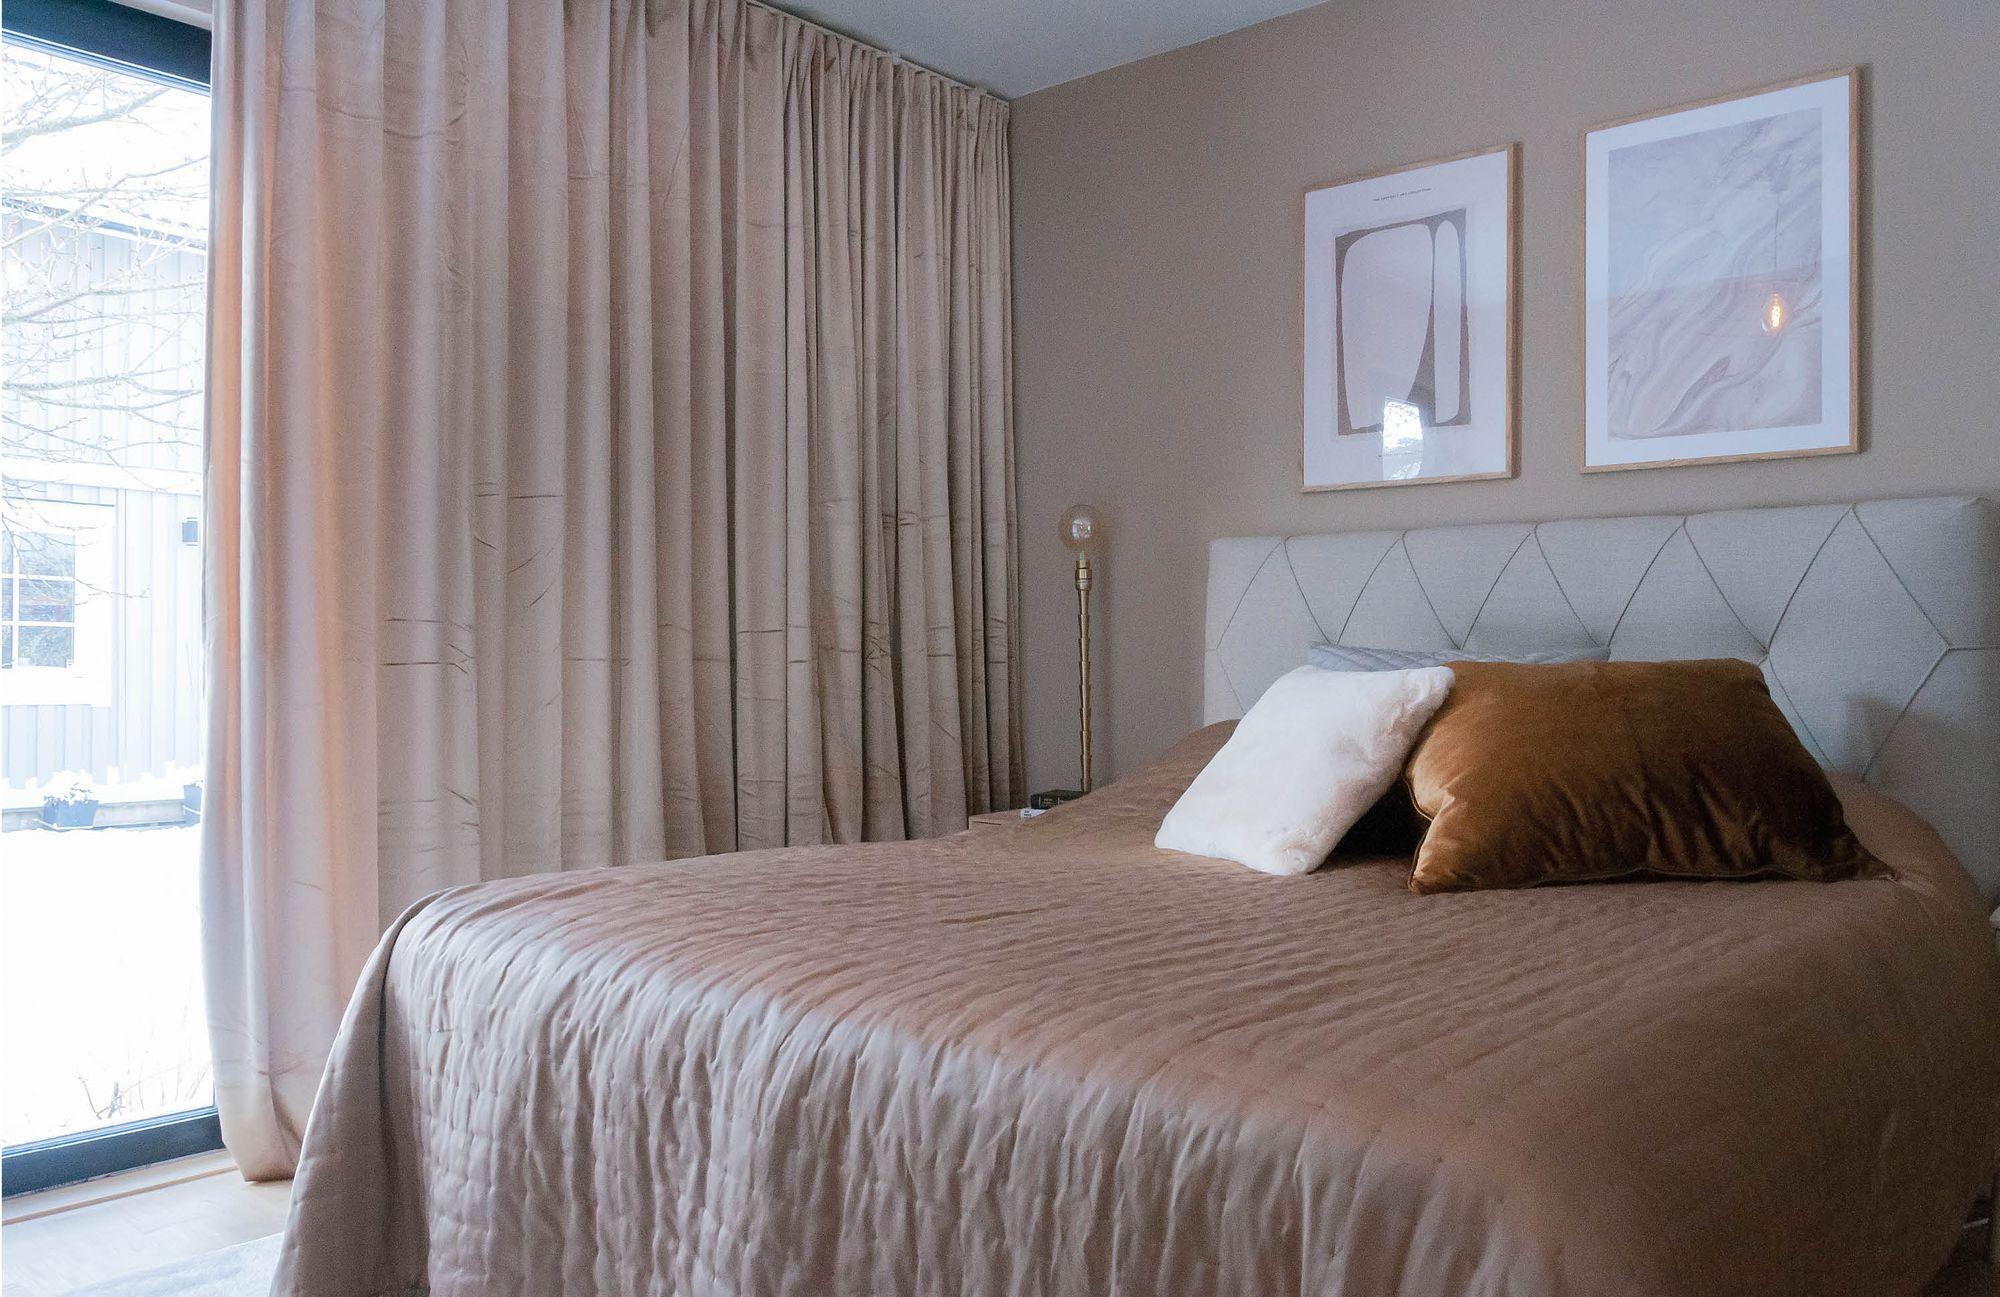 Efterbild av renovering sovrum i hus, säng med ljust överkast, sänggavel i grått, ljusa gardiner